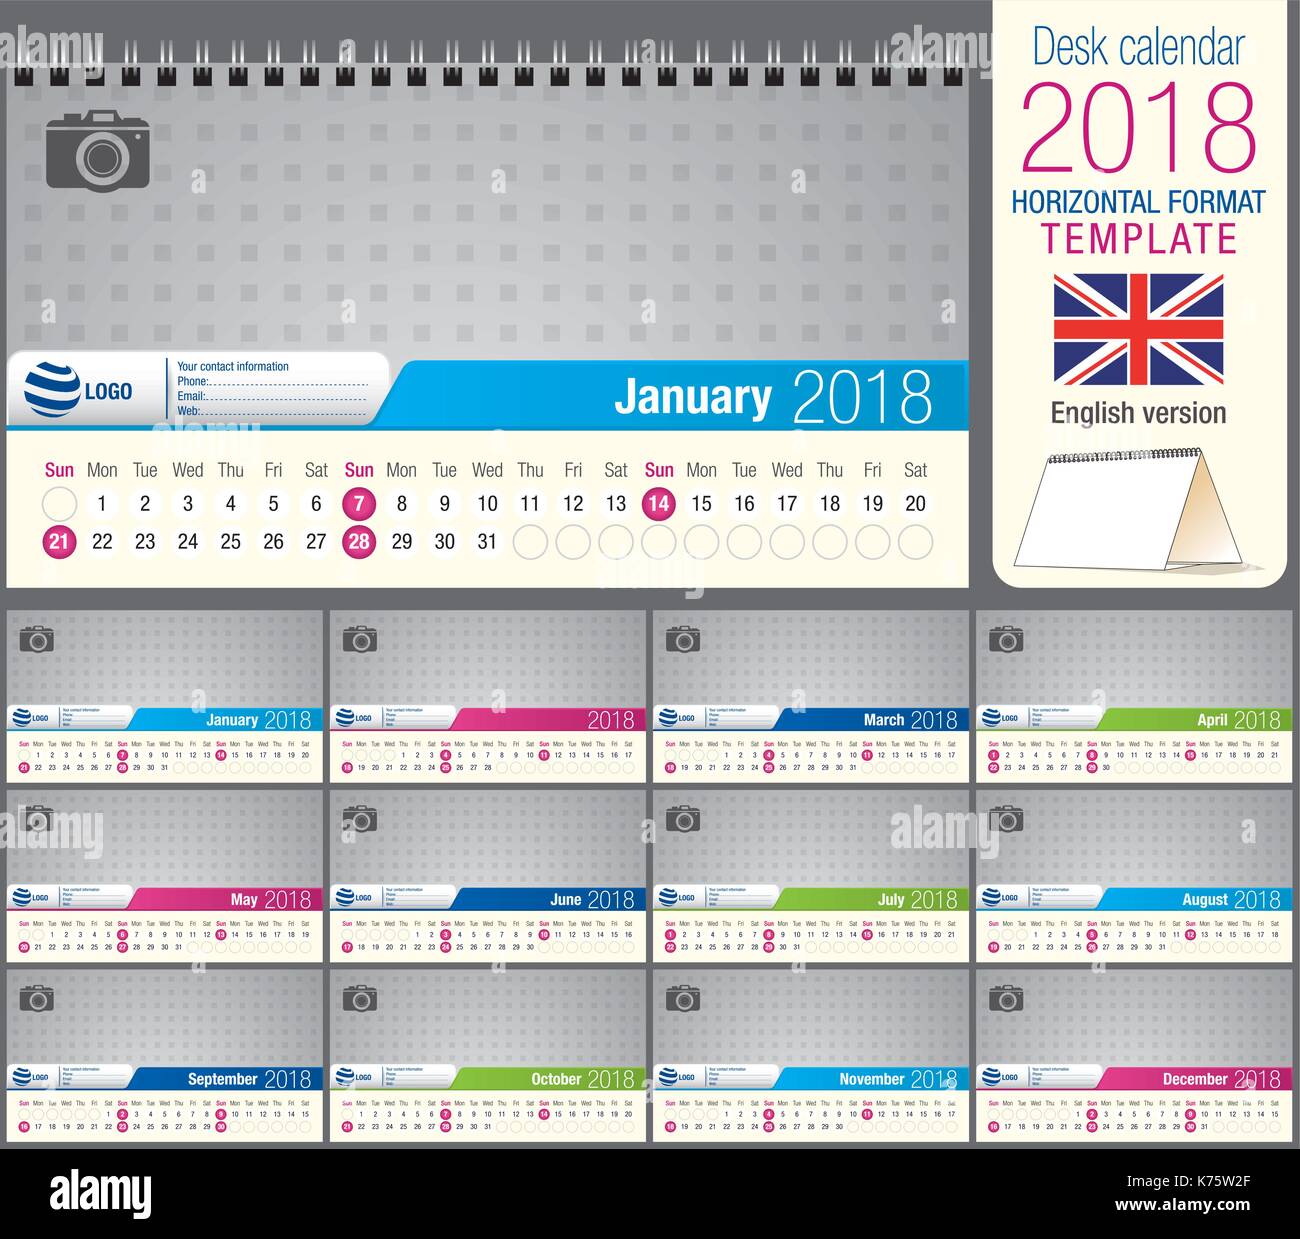 Utile scrivania calendario triangolo 2018 modello, pronto per la stampa. Dimensioni: 22 cm x 12 cm. formato orizzontale. Versione inglese Illustrazione Vettoriale